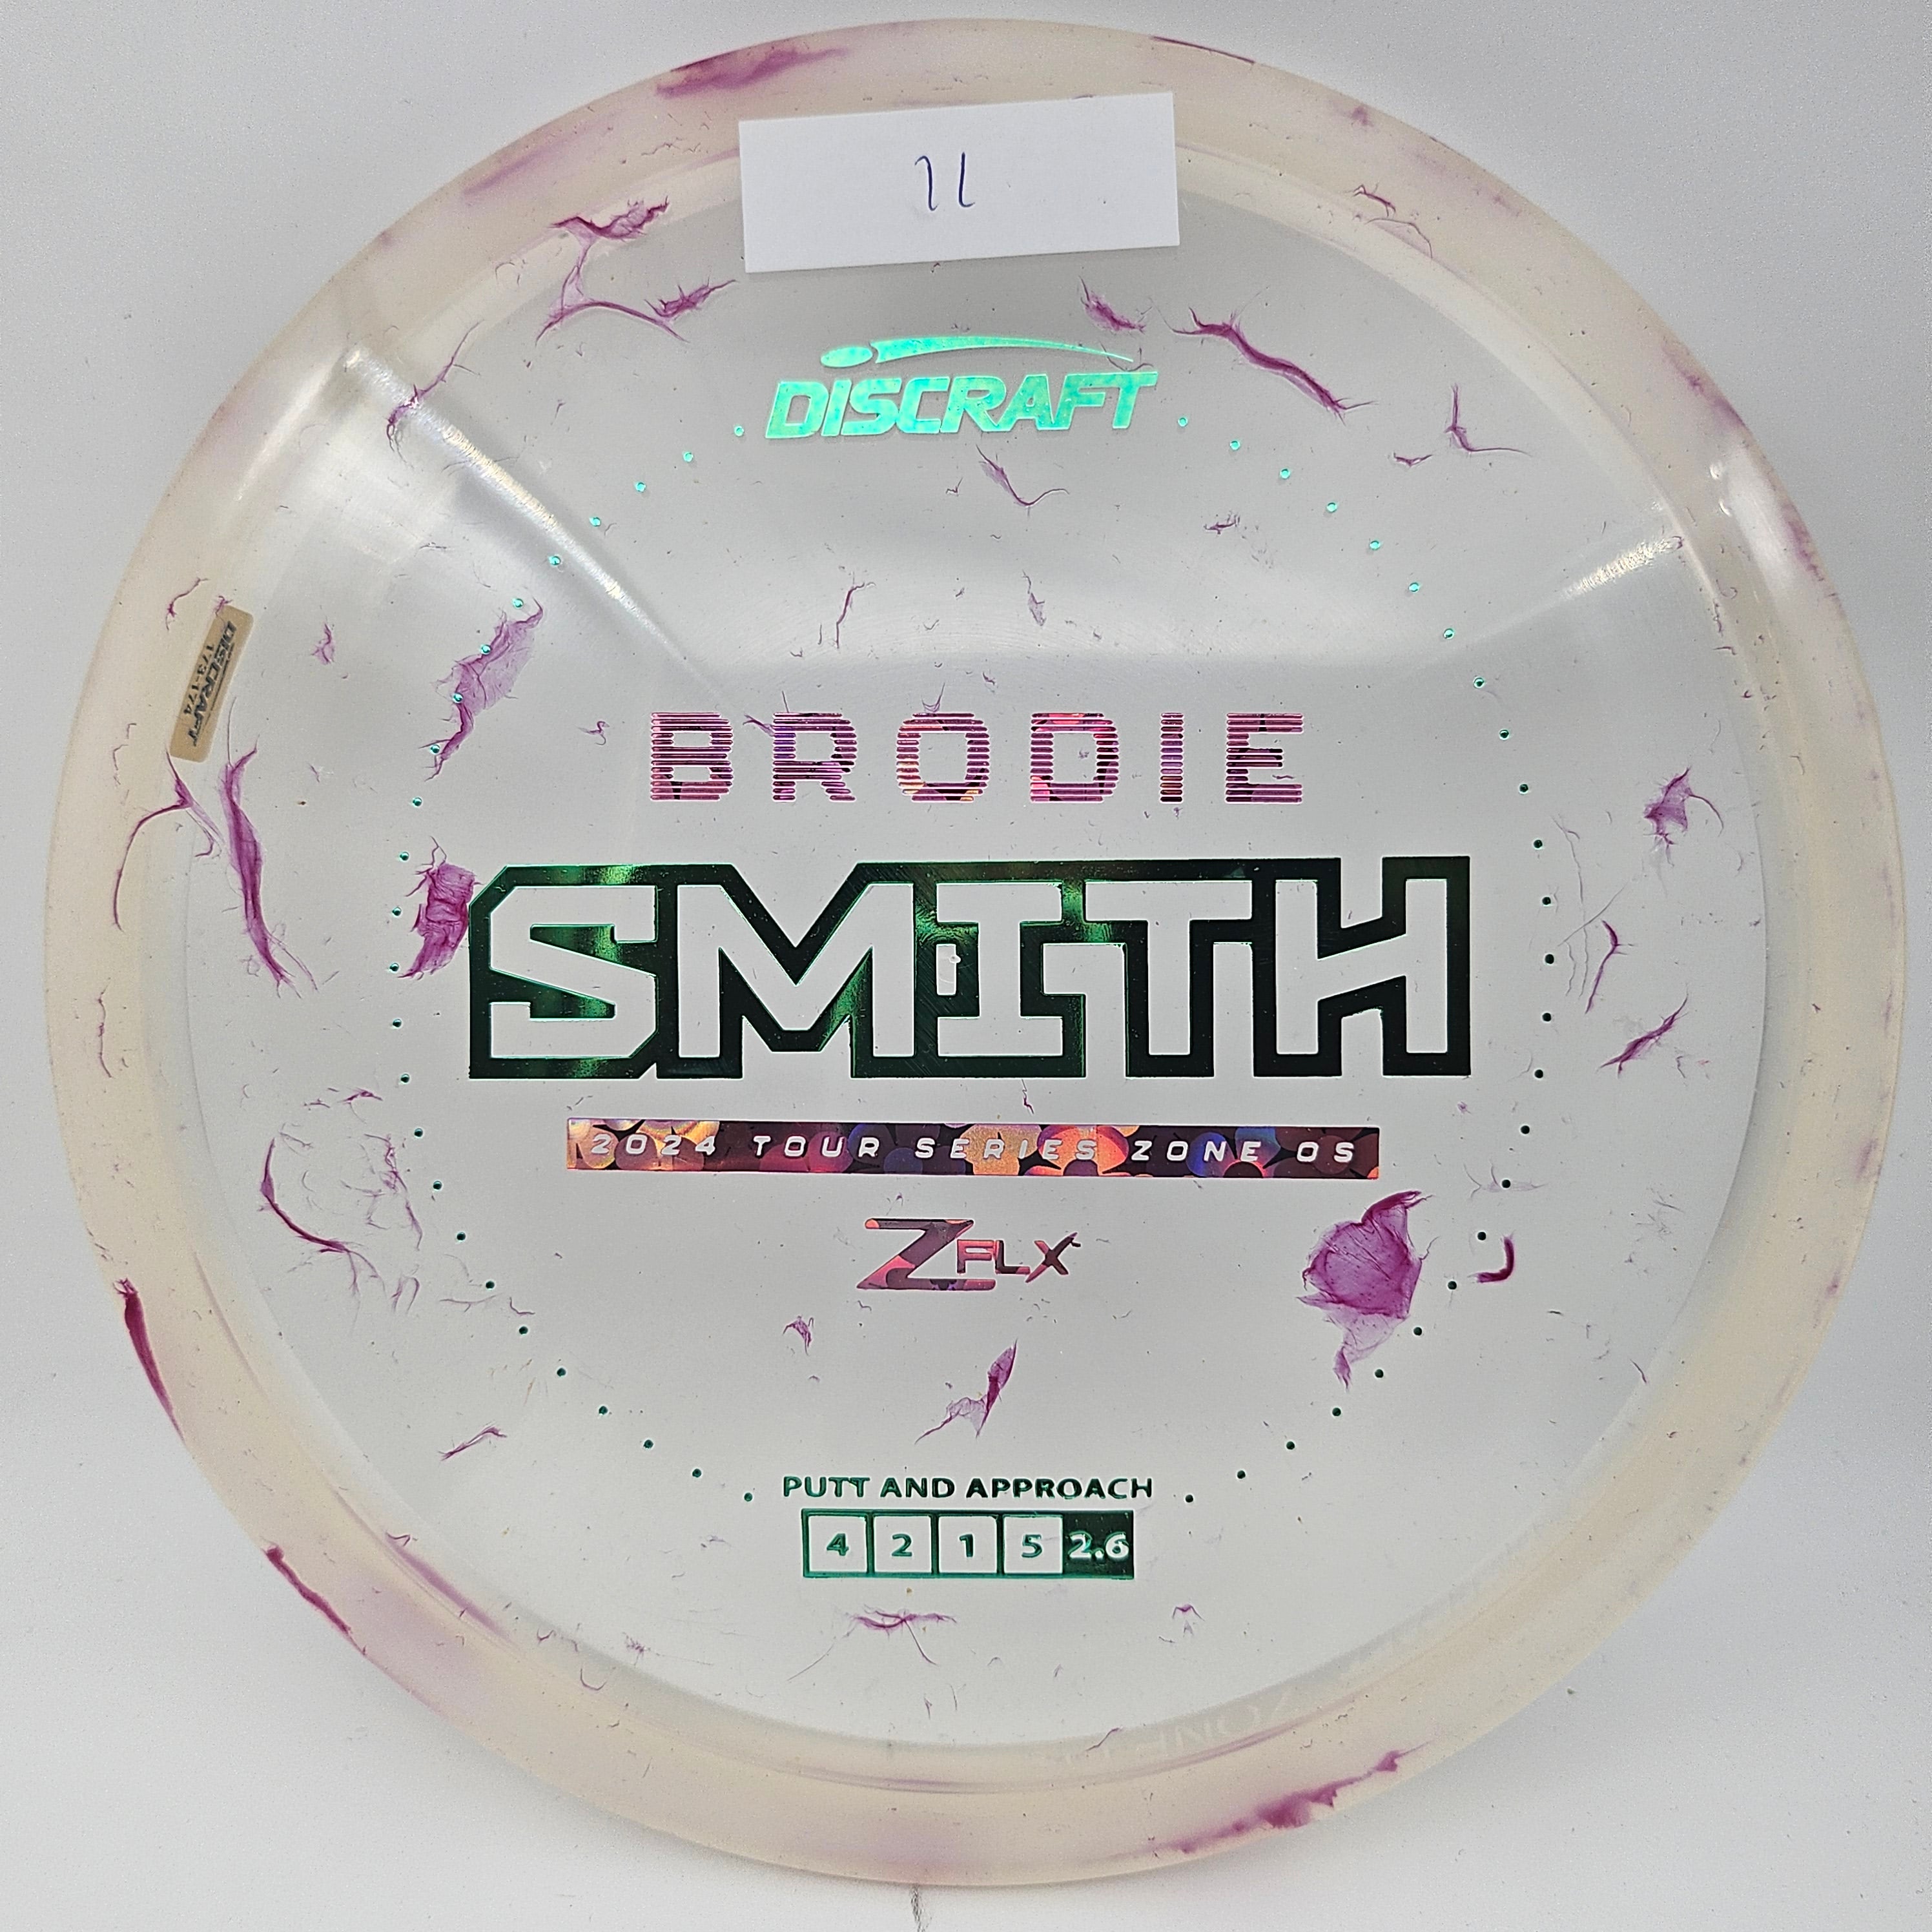 Z FLX Jawbreaker Zone OS - Brodie Smith Tour Series 2024